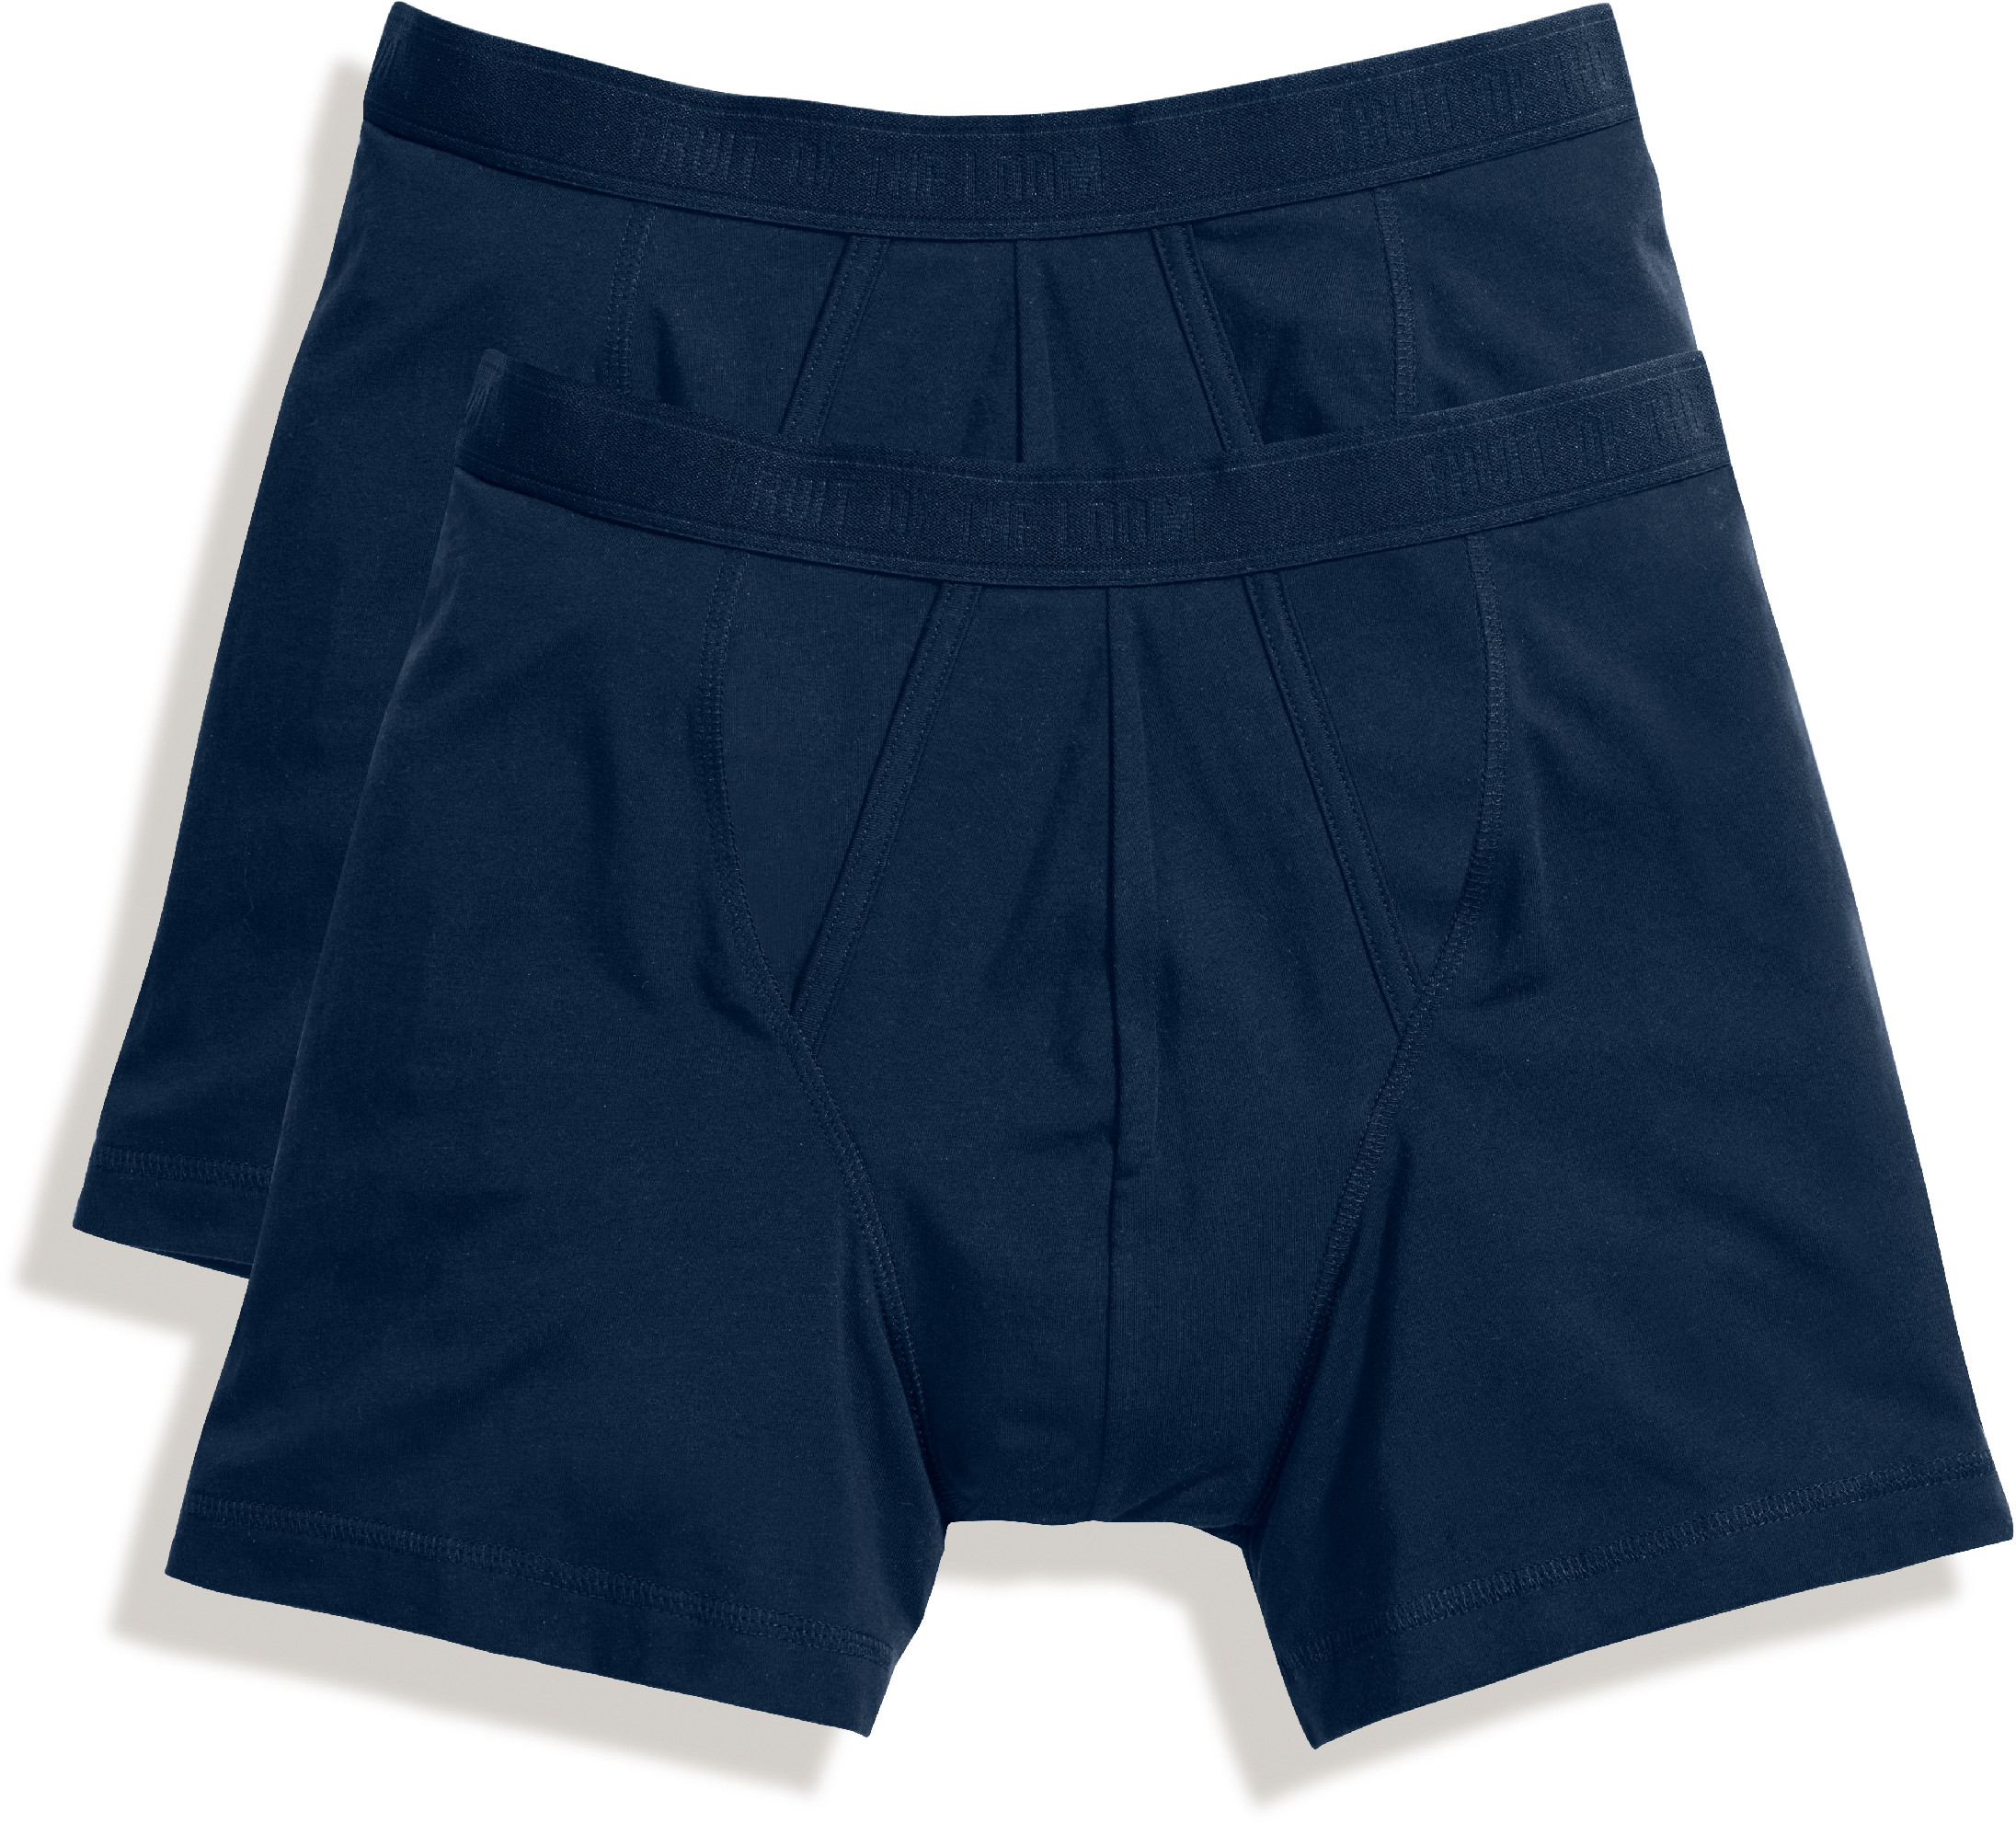 Pánské boxerky, balení po 2 ks Barva: underwear navy/underwear navy, Velikost: XXL